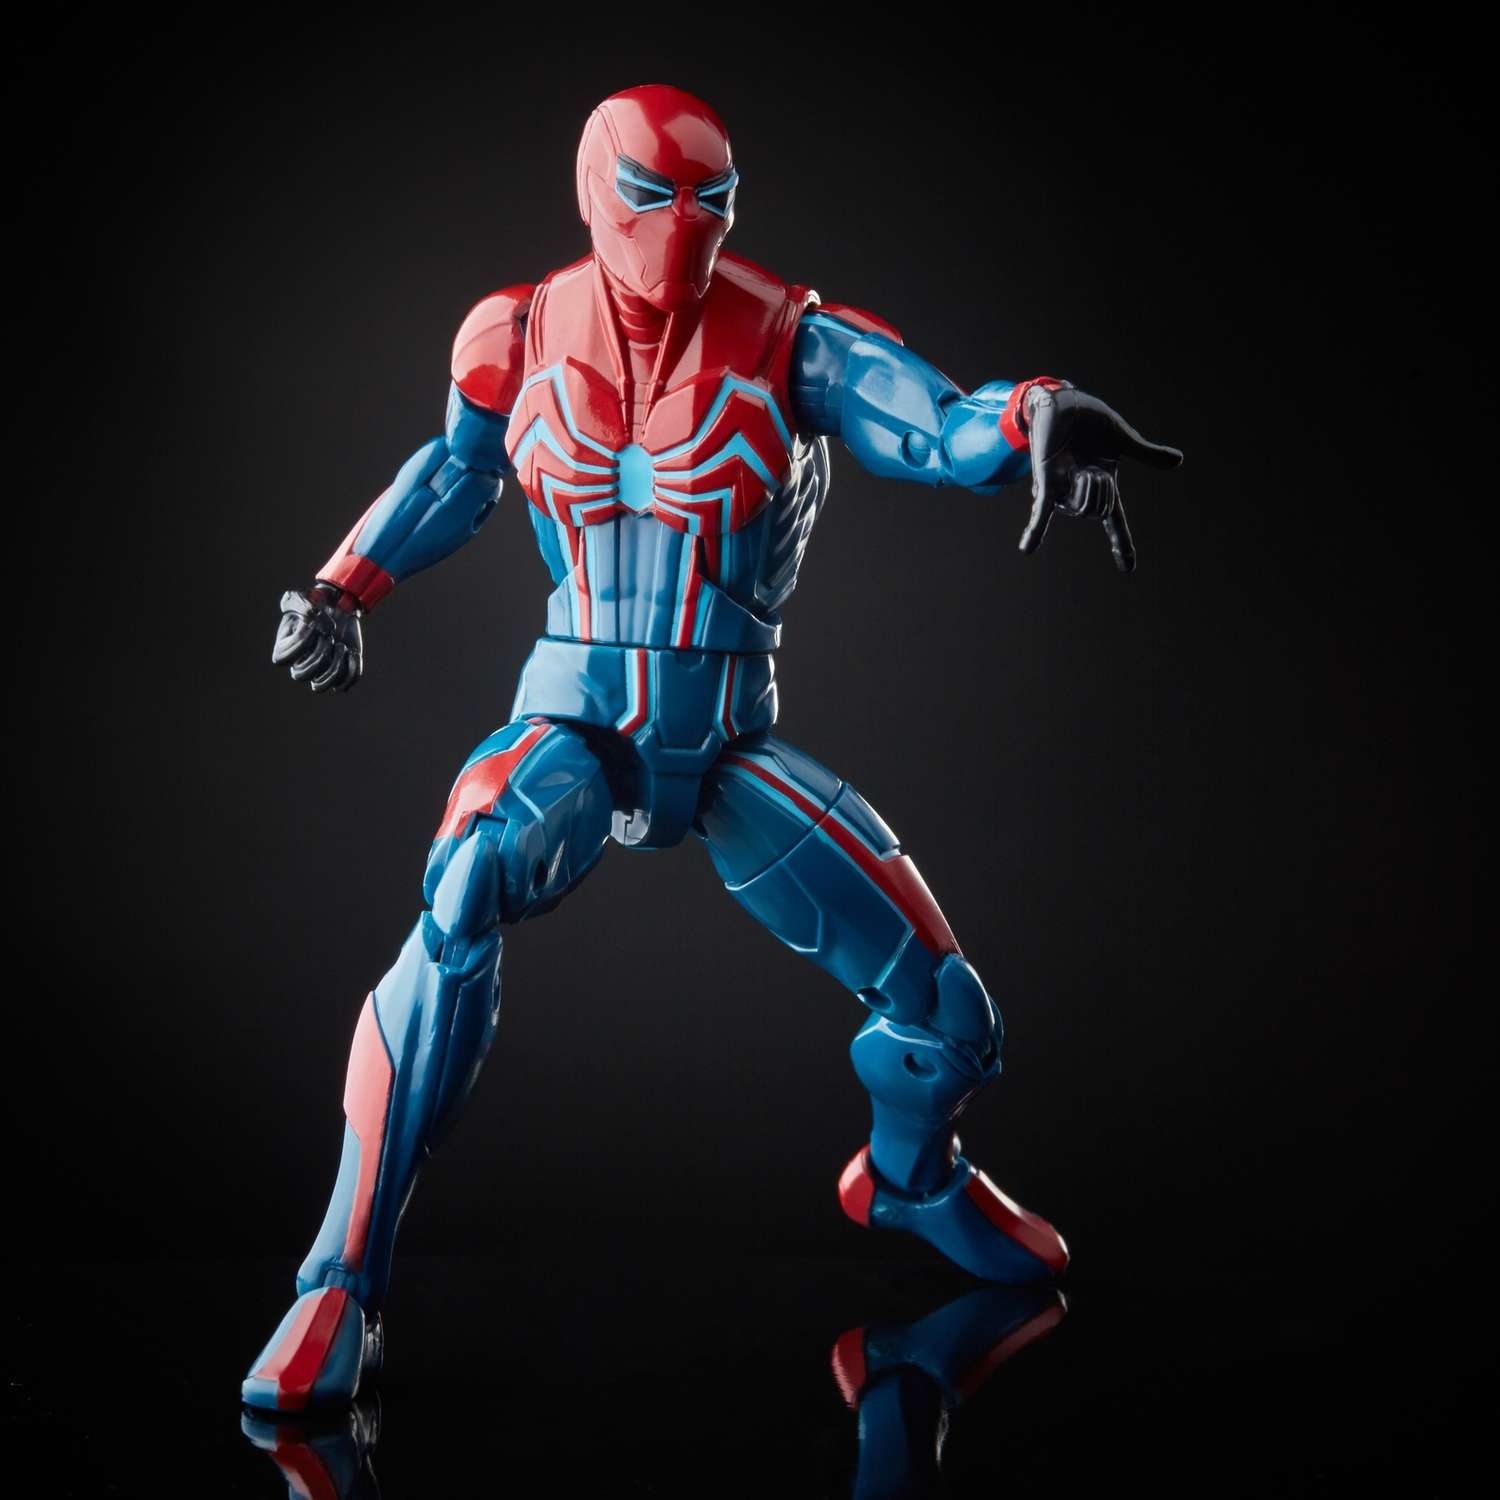 Игрушка Человек-Паук (Spider-man) (SM) Человек-Паук Слатер E81215L0 - фото 4